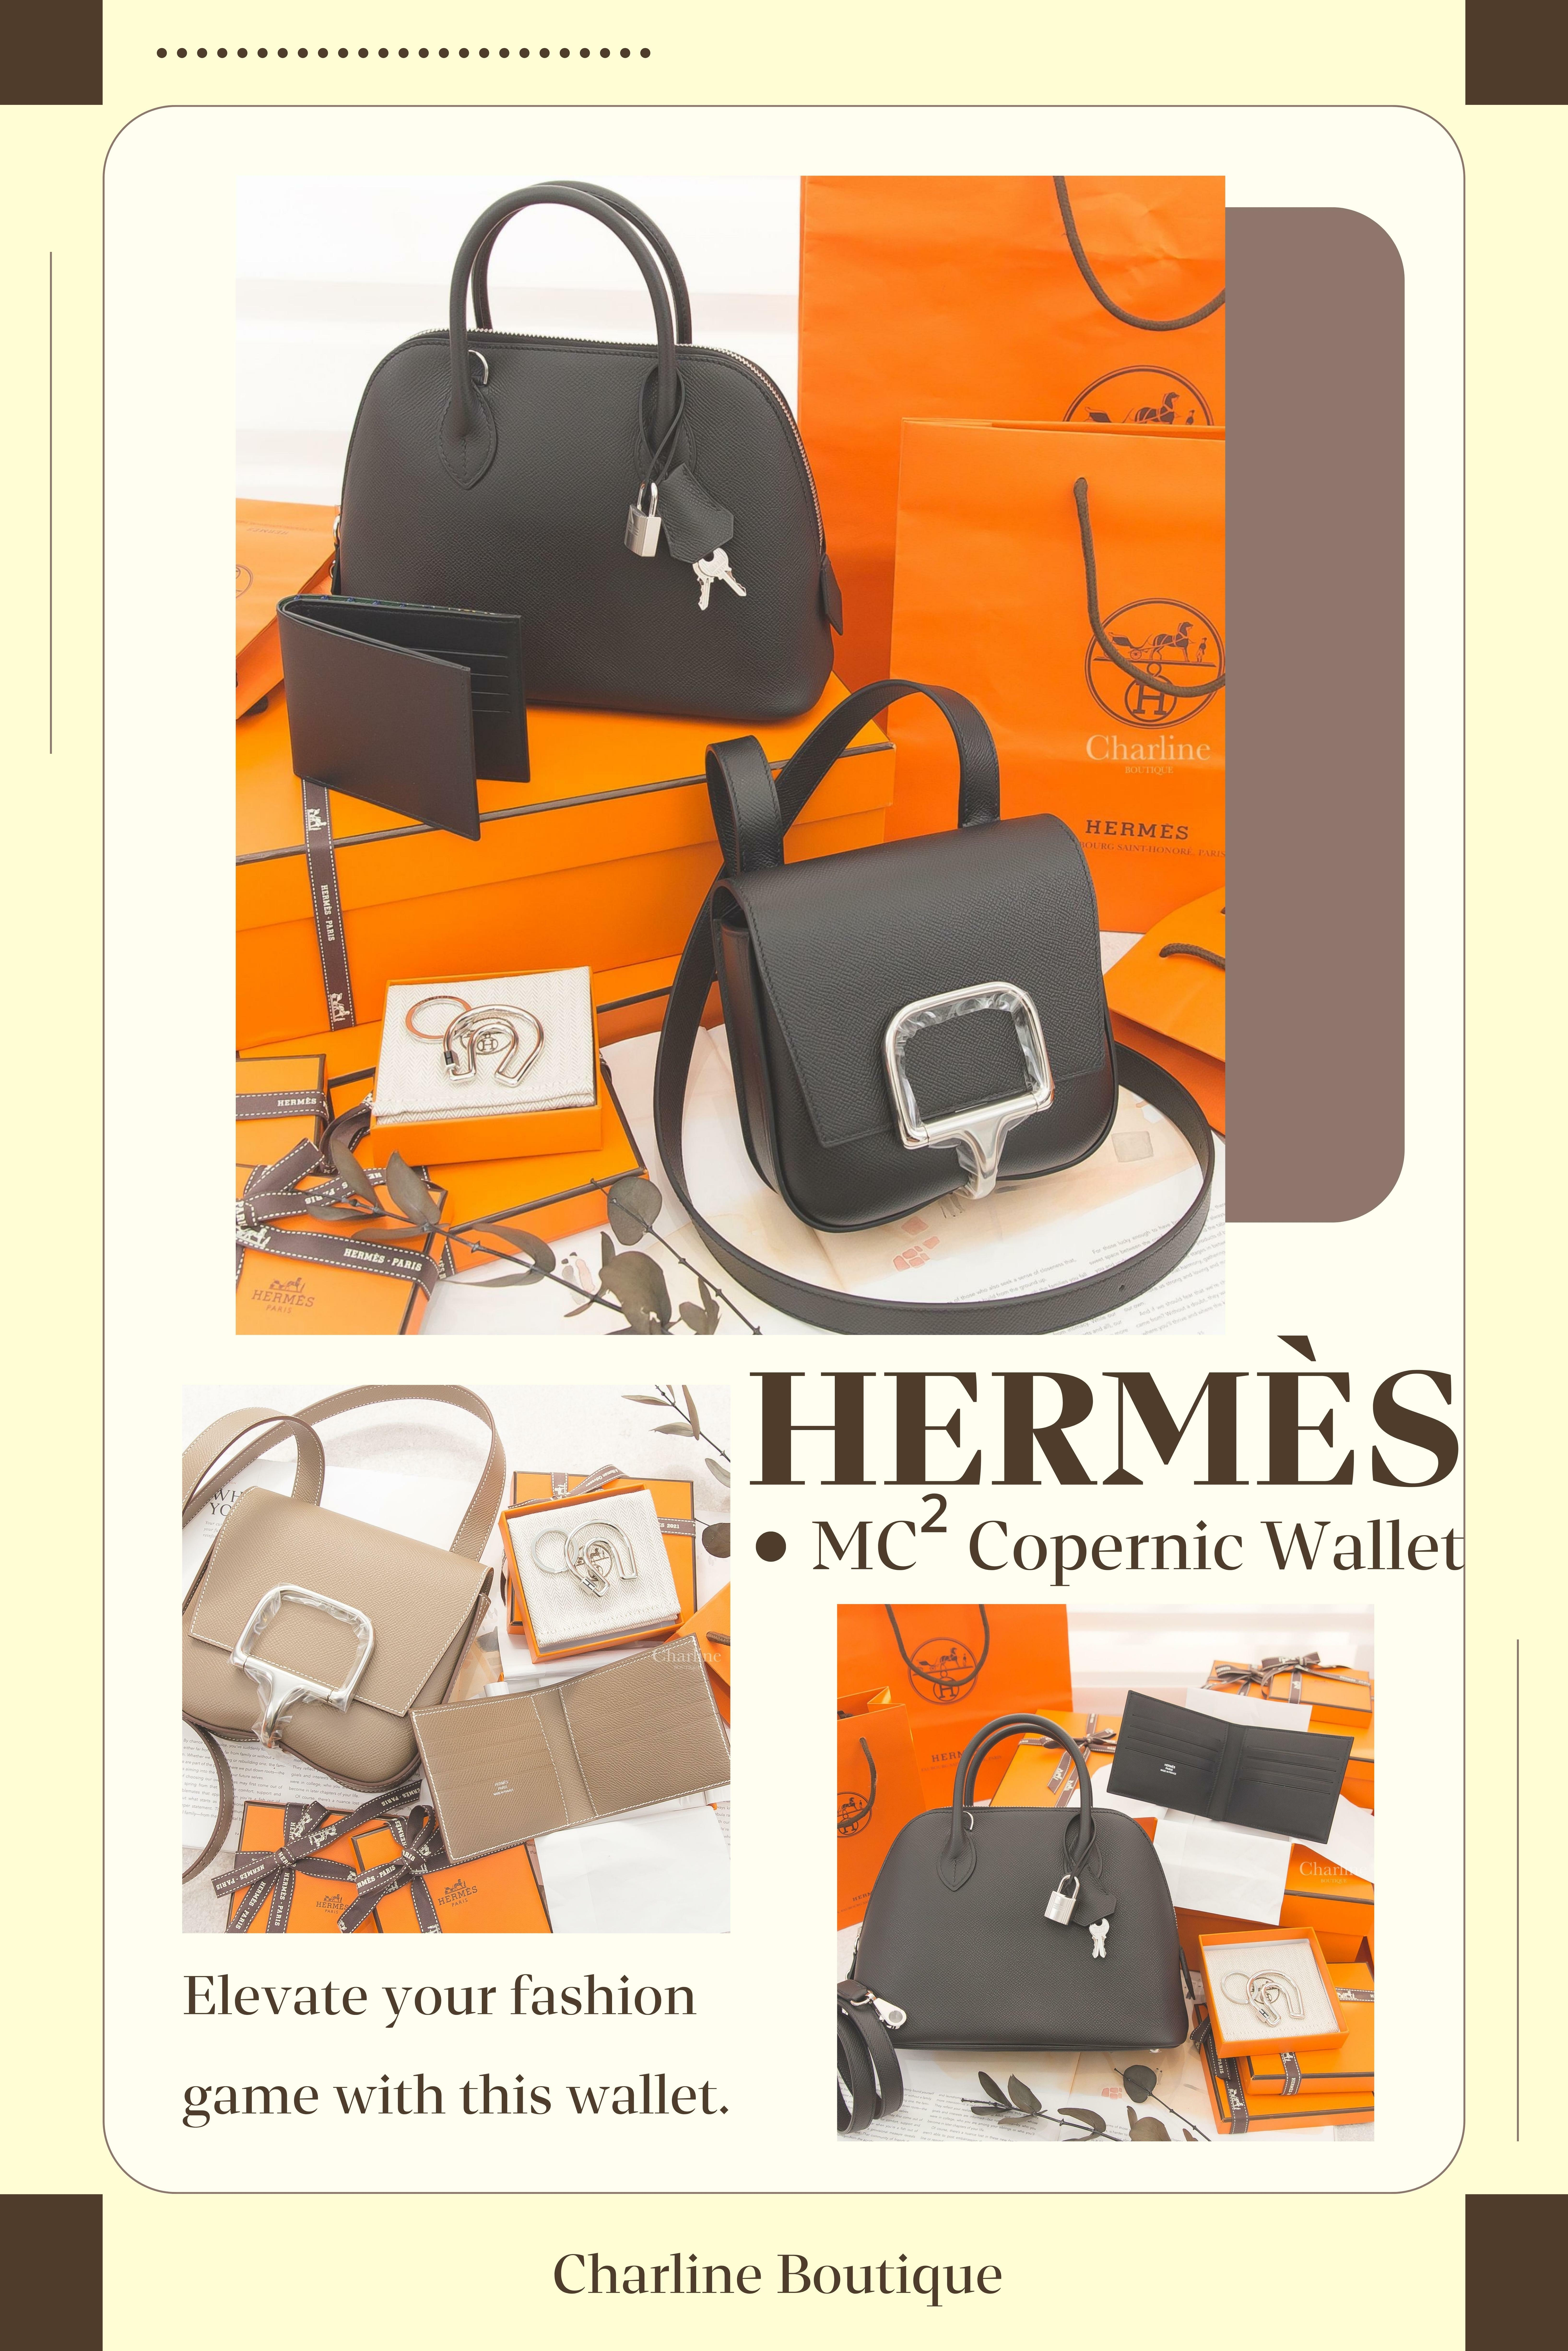 在Hermès的花花世界裡，不僅有令人垂涎的包包，還有一系列令人心癢癢的的小皮件，如皮夾、卡片套、鑰匙圈等。這些小皮件以極簡約的設計深獲我們心，就衝著Hermès的名號皮革質感肯定也是滿分的～因此許多人可能有預算上的限制，就可以先從小皮件入手。每一款小皮件都是Hermès卓越工藝的體現，讓我們在日常細節中感受到品味的奢華。無論是作為自用或獨特禮物，都能為人們帶來無盡的喜悅和自信。接著讓我們來介紹有哪些熱門款式。